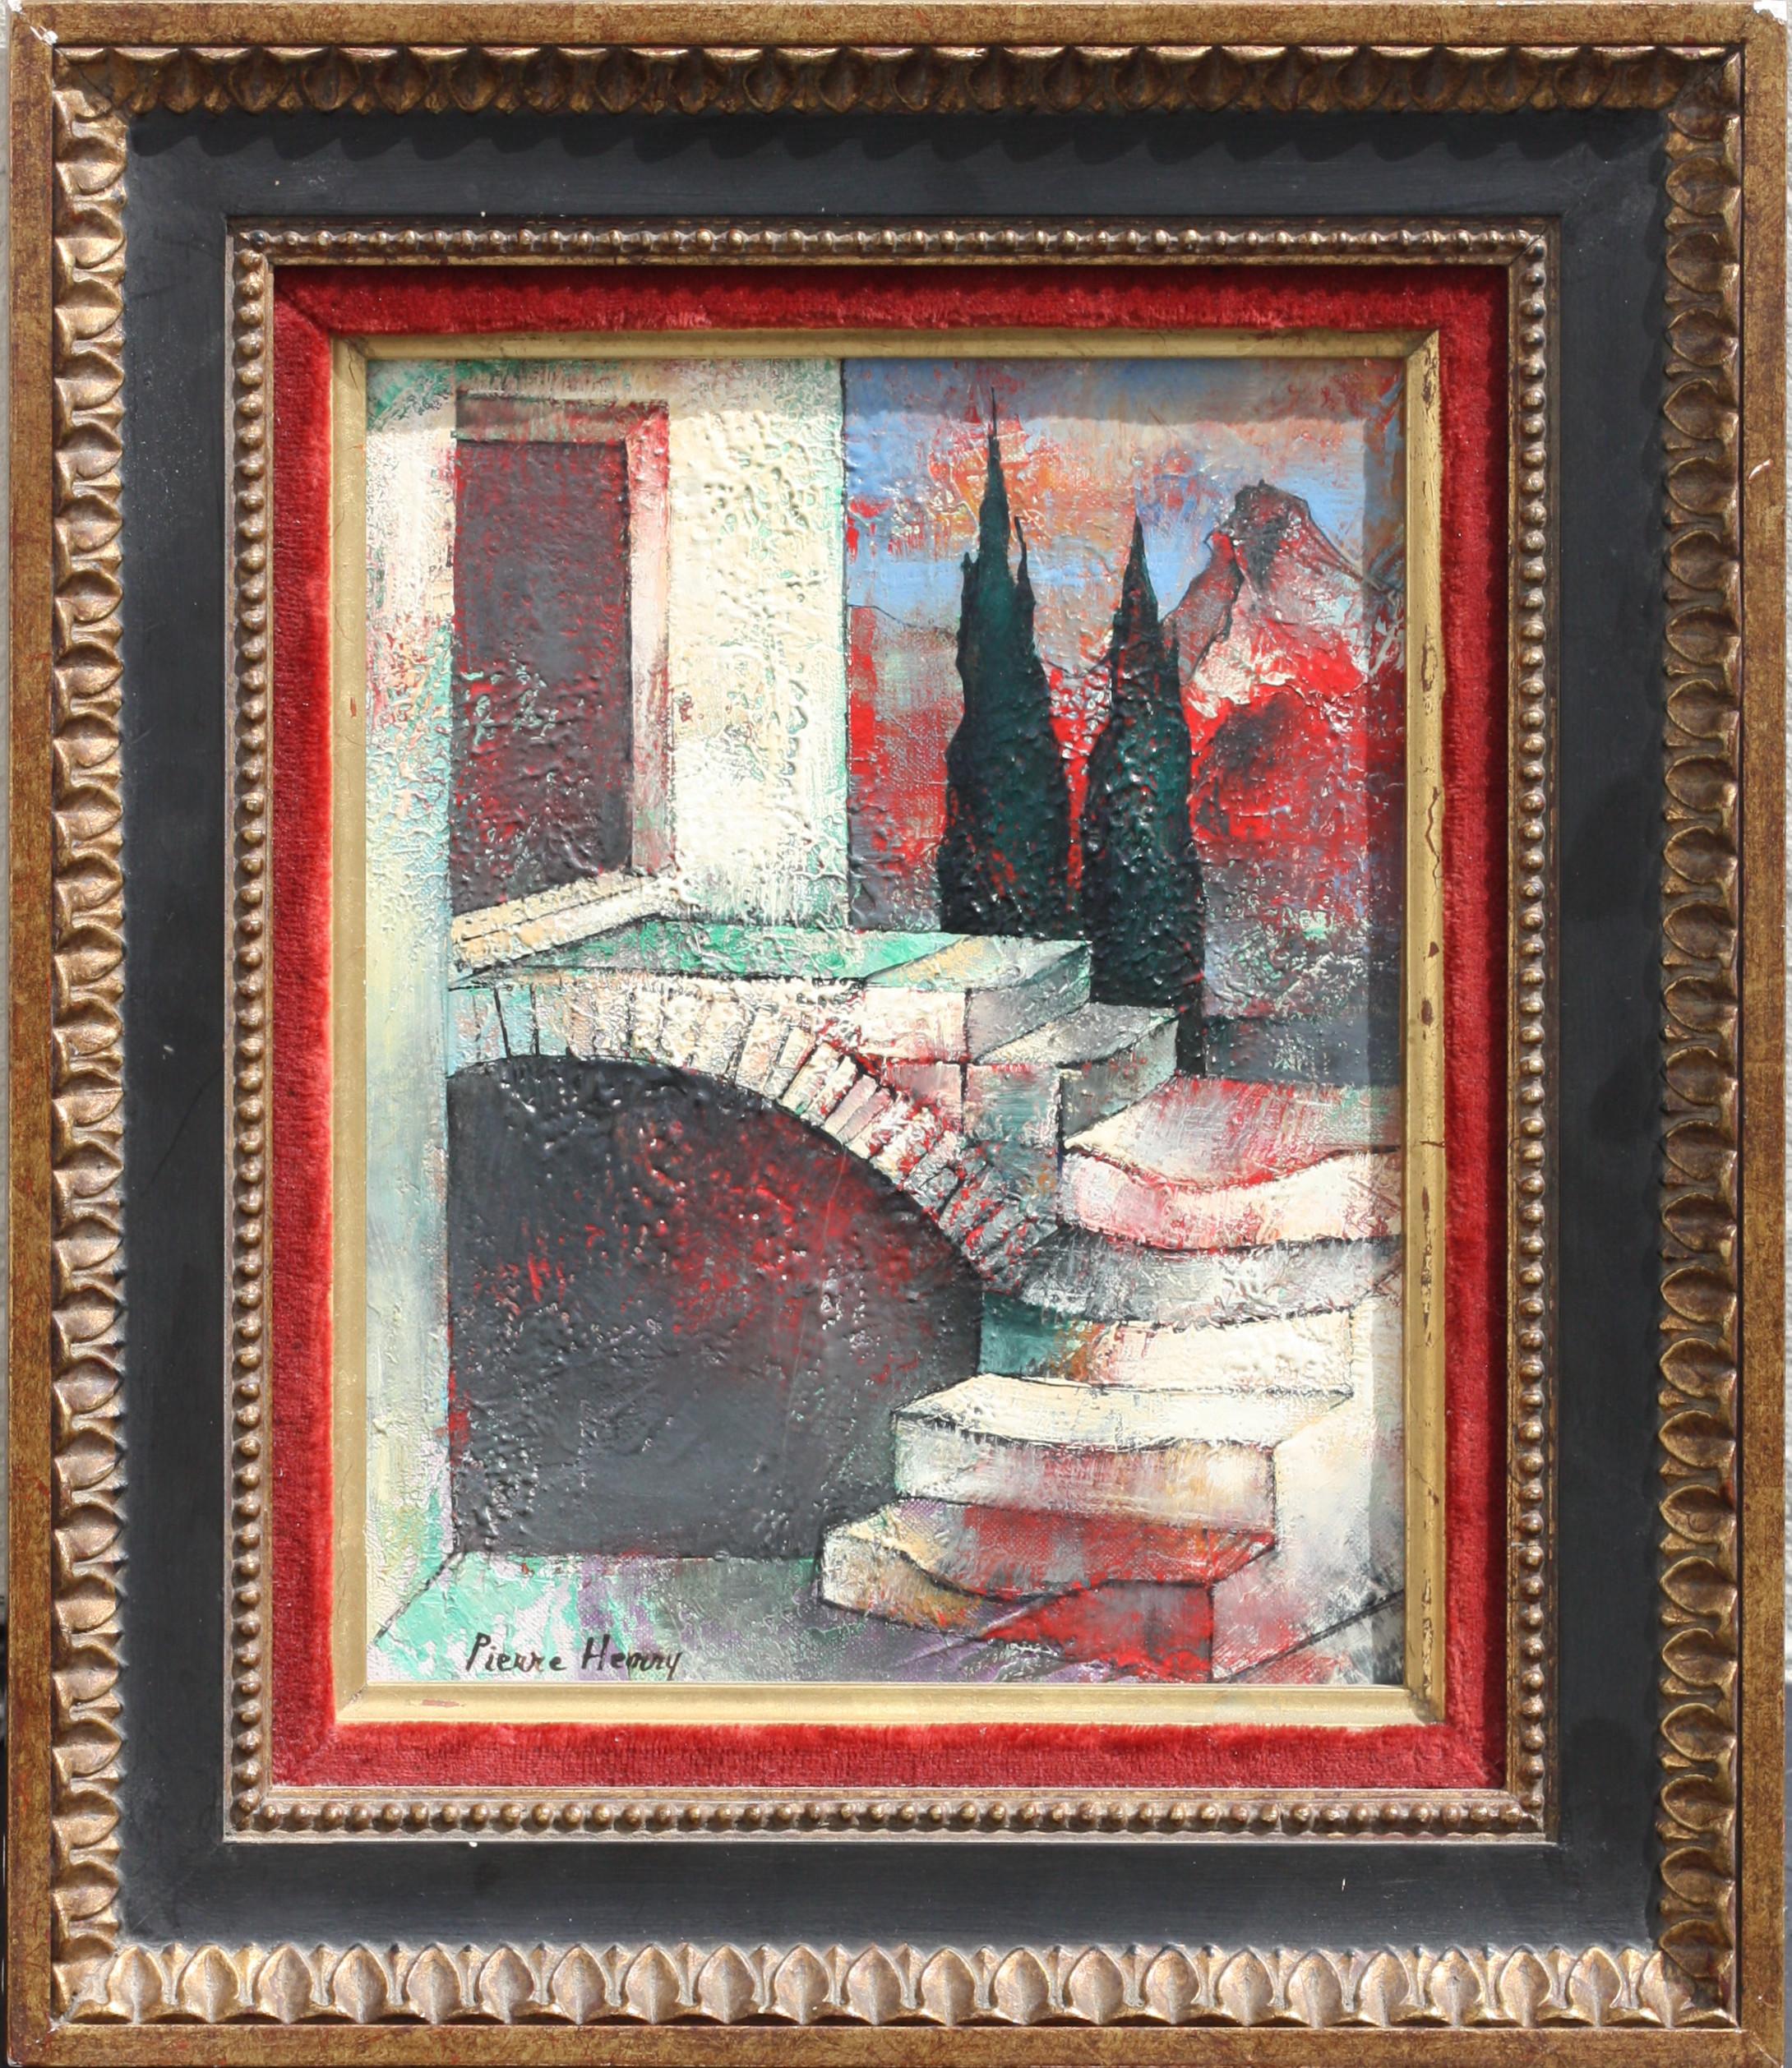 PIERRE-HENRY (1924-2015)
Peinture, huile sur toile
9.5 x 7,5 in. (24,13 x 19,05 cm.) 
avec cadre
13.5 x 11,5 in. (34,29 x 29,21 cm.)
